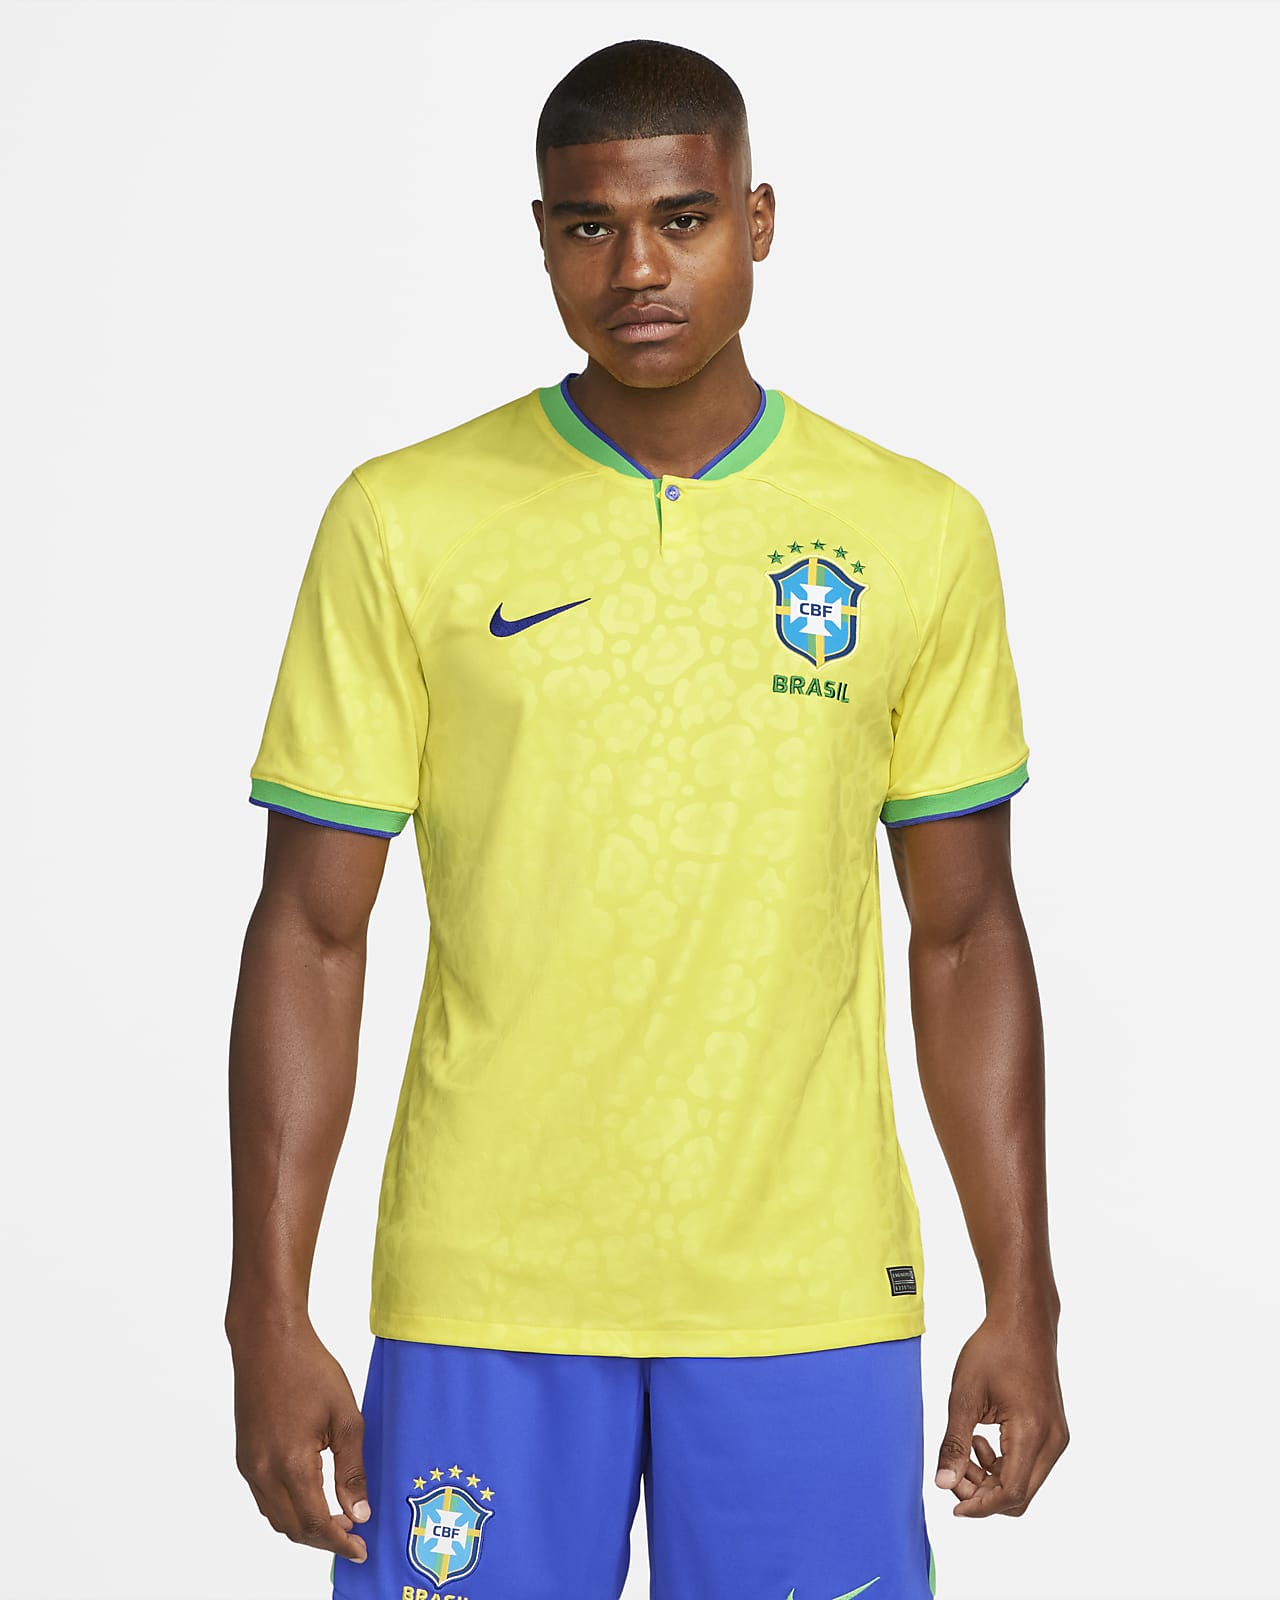 2022/23 赛季巴西队主场球迷版 Nike Dri-FIT 男子足球球衣